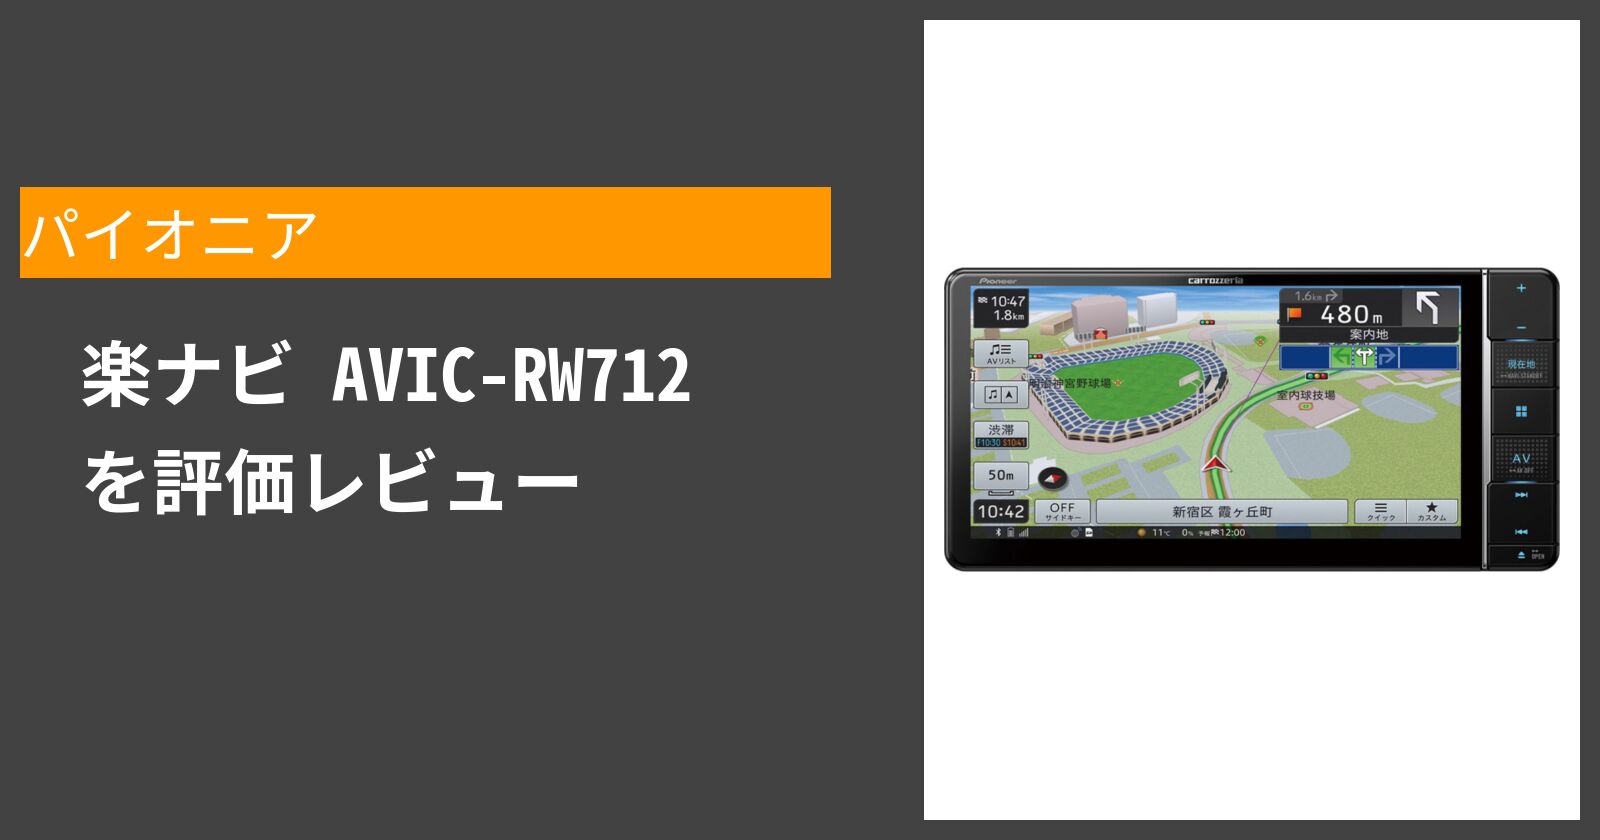  楽ナビ AVIC-RW712 を徹底評価